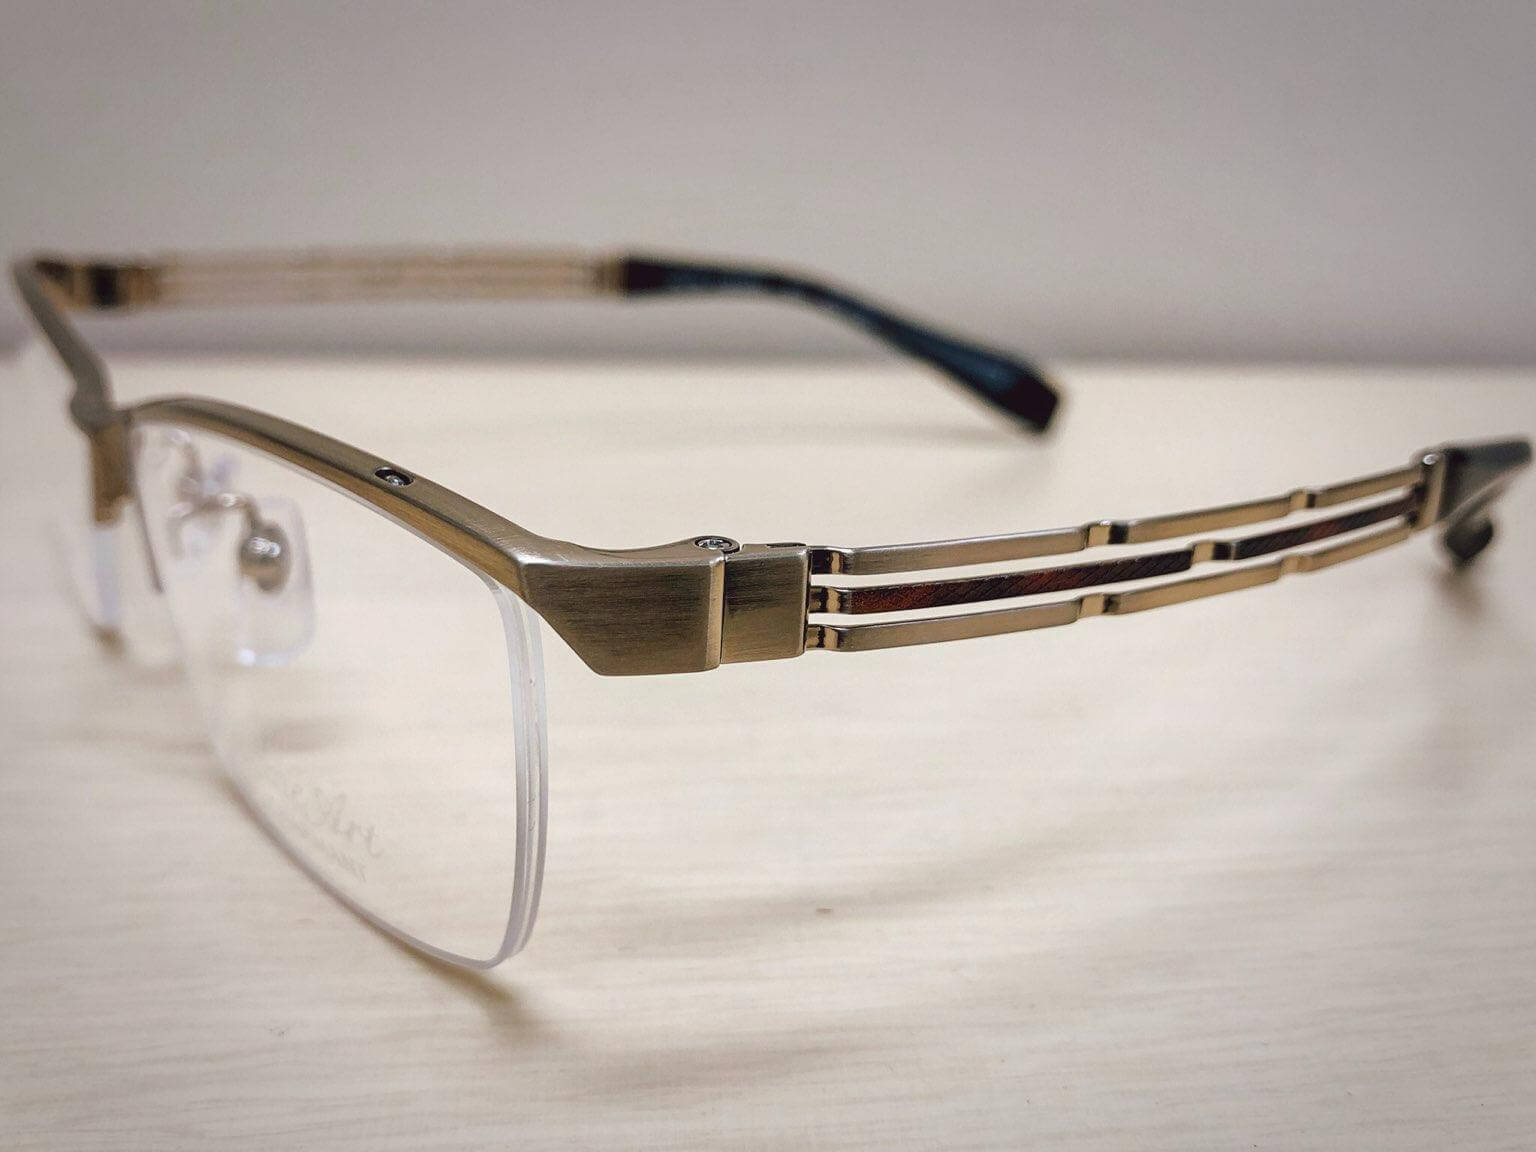 ラインアートXL1826質感高級感がある力強い男性メガネです。 | 飯塚 田川のメガネ店 メガネのサトー